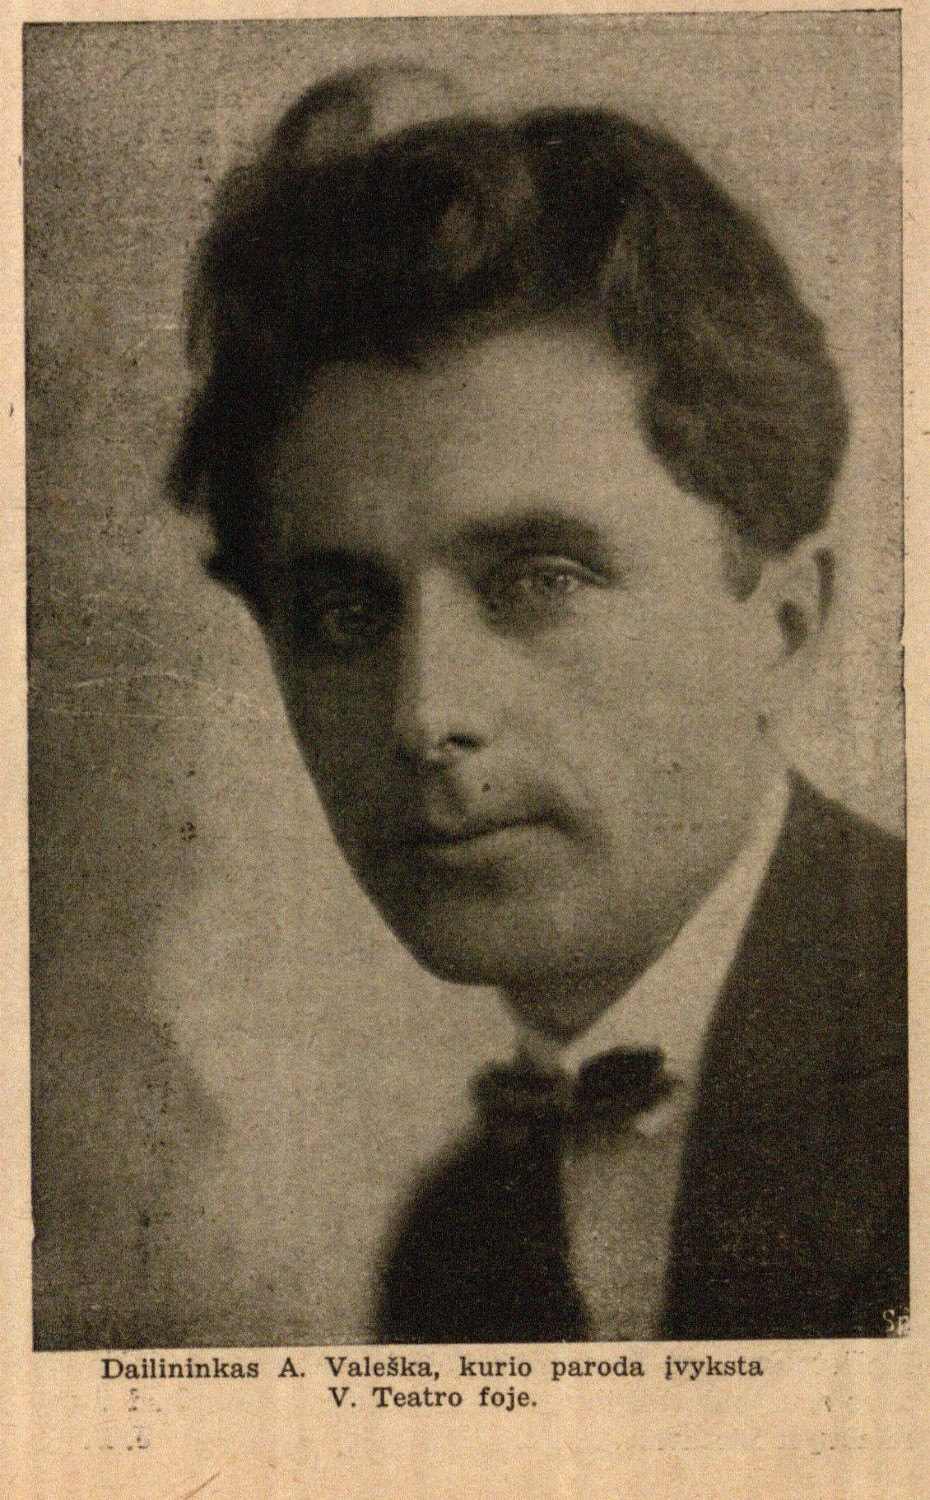 Dailininkas A. Valeška, kurio paroda įvyksta V. Teatro fojė // Laiko žodis. – 1934, Nr. 12, p. 9.